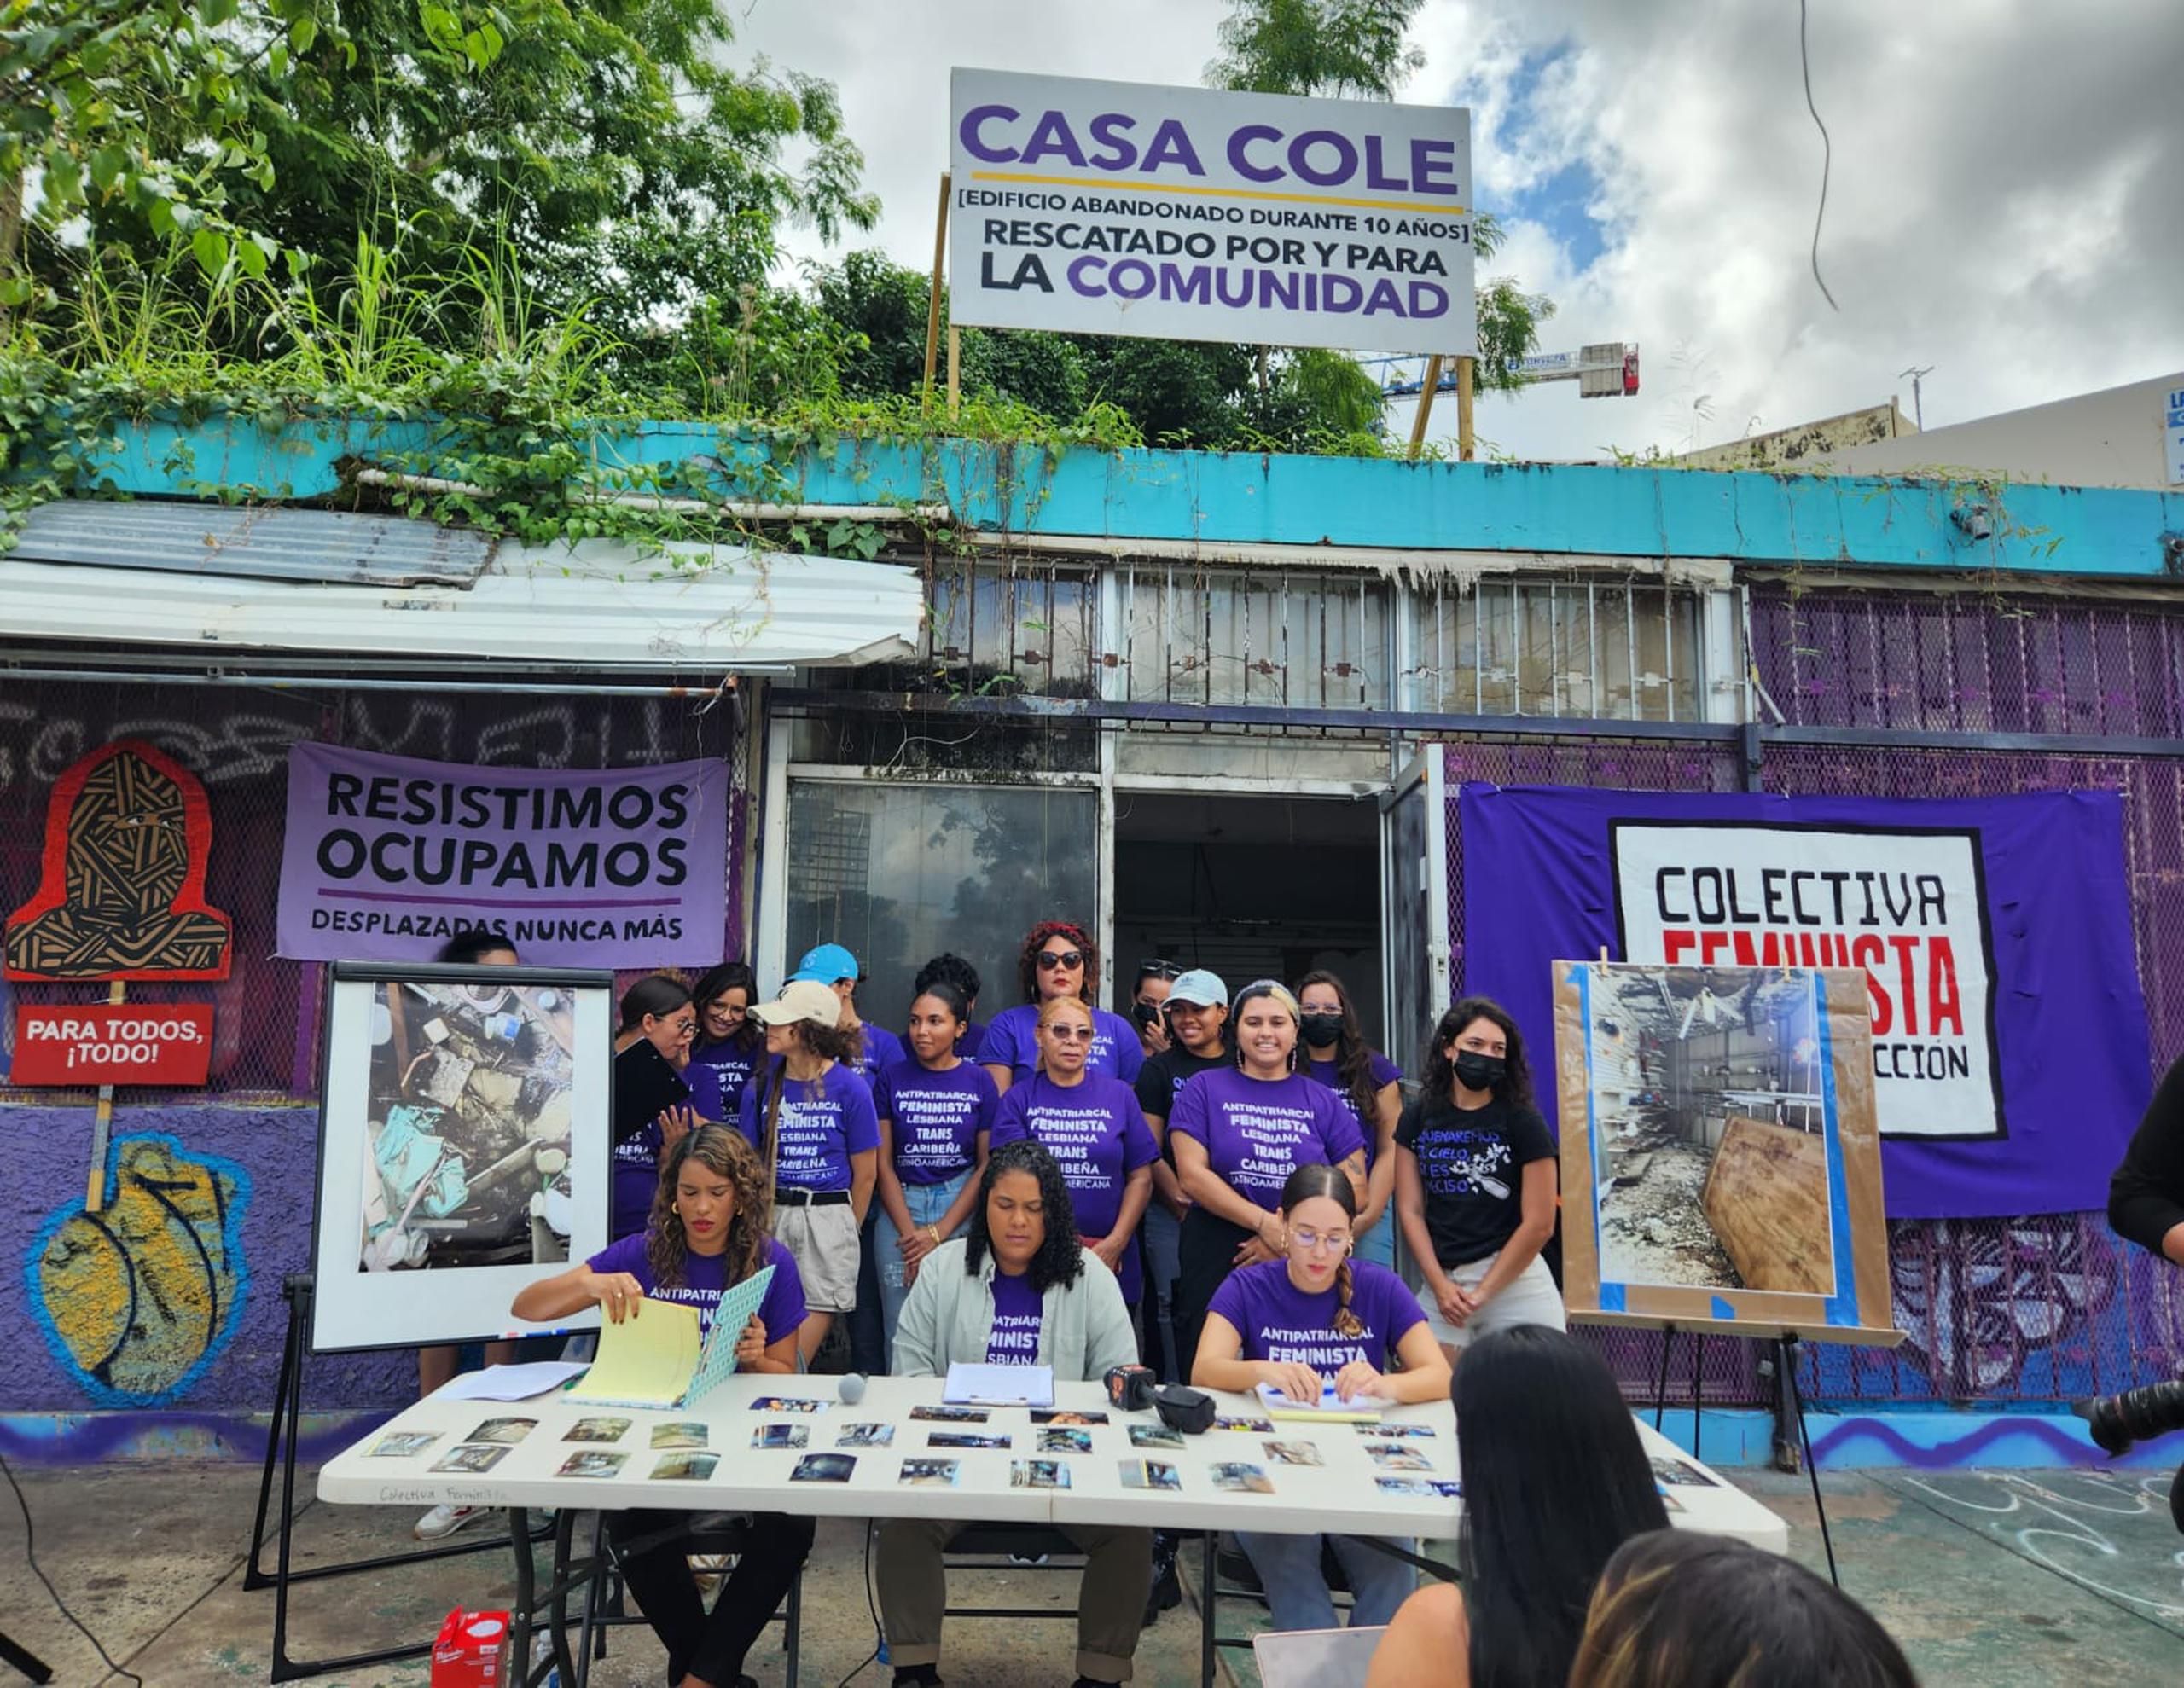 Miembros de la Colectiva Feminista en Construcción realizan la conferencia de prensa frente al edificio en controversia en Río Piedras.